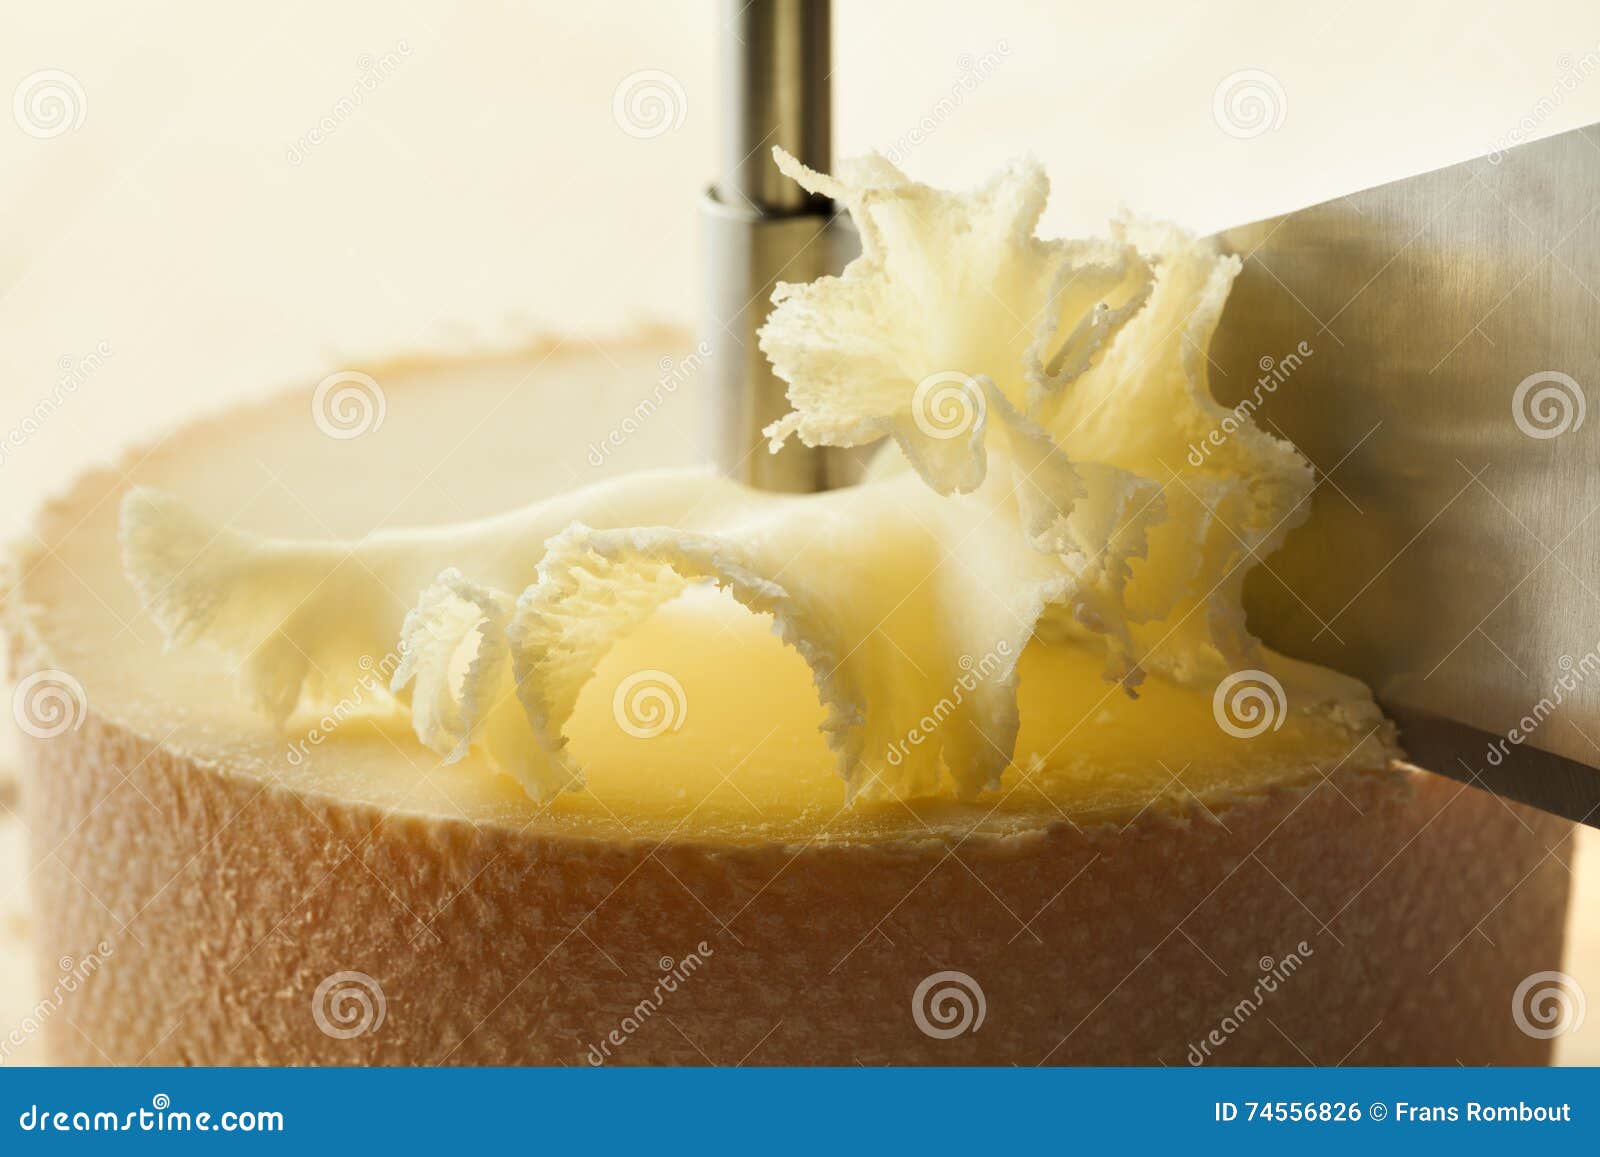 https://thumbs.dreamstime.com/z/shaving-ete-de-moine-cheese-tete-girolle-74556826.jpg